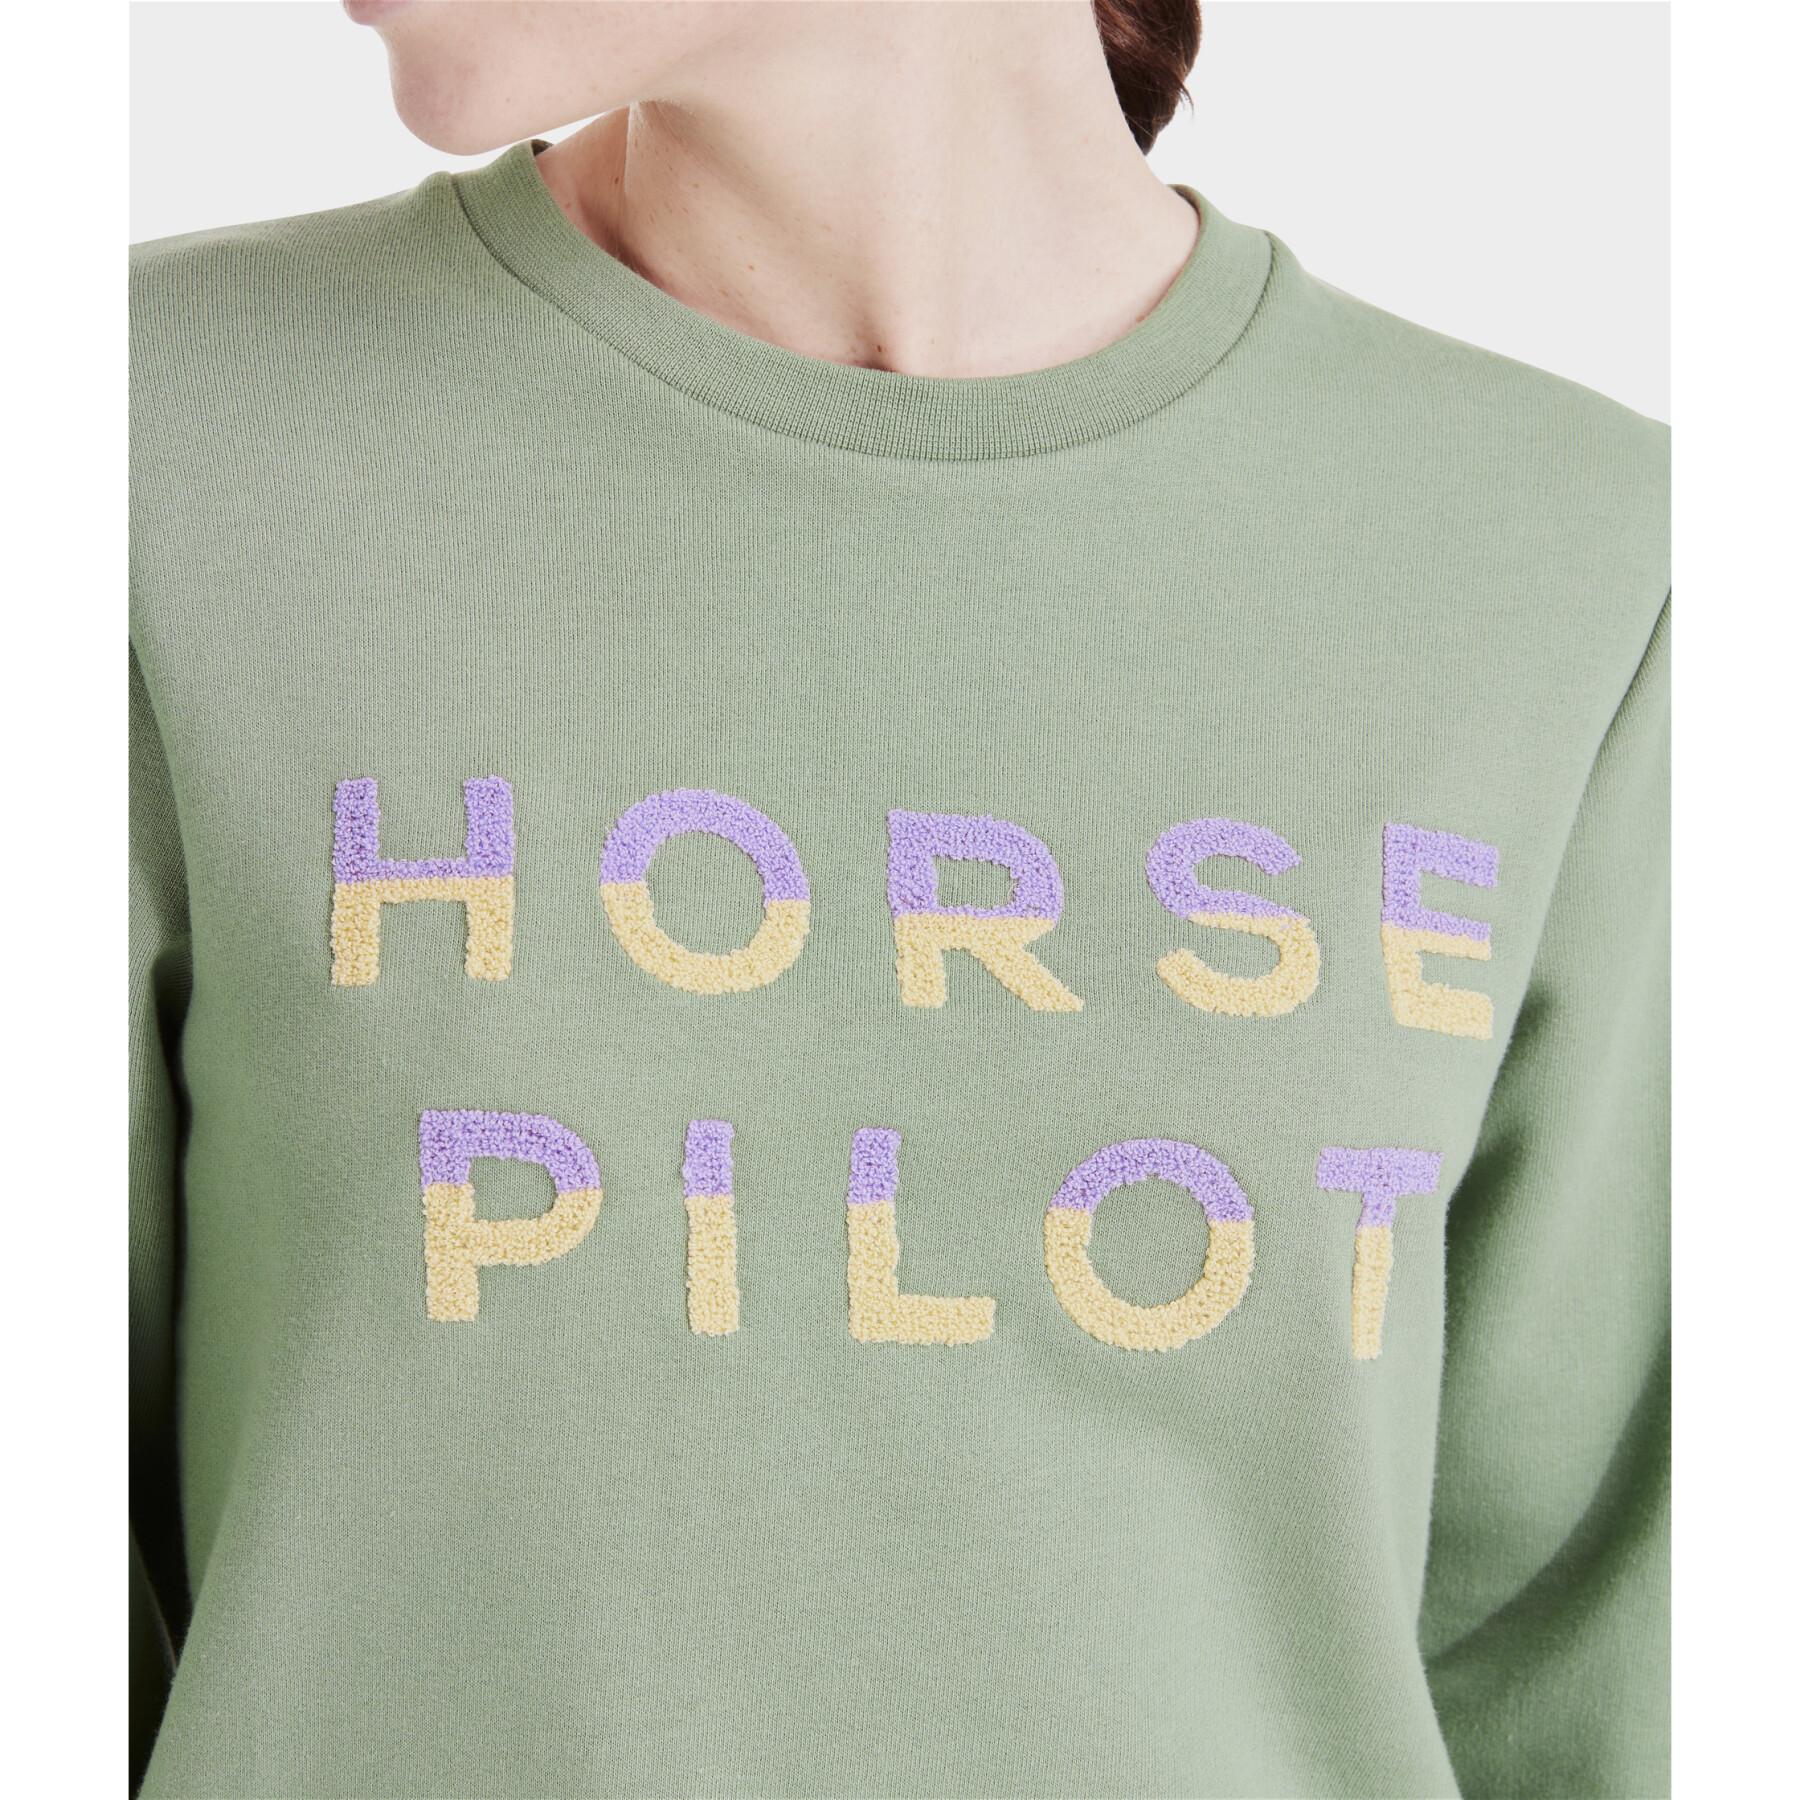 Sweatshirt equitação feminina Horse Pilot Team